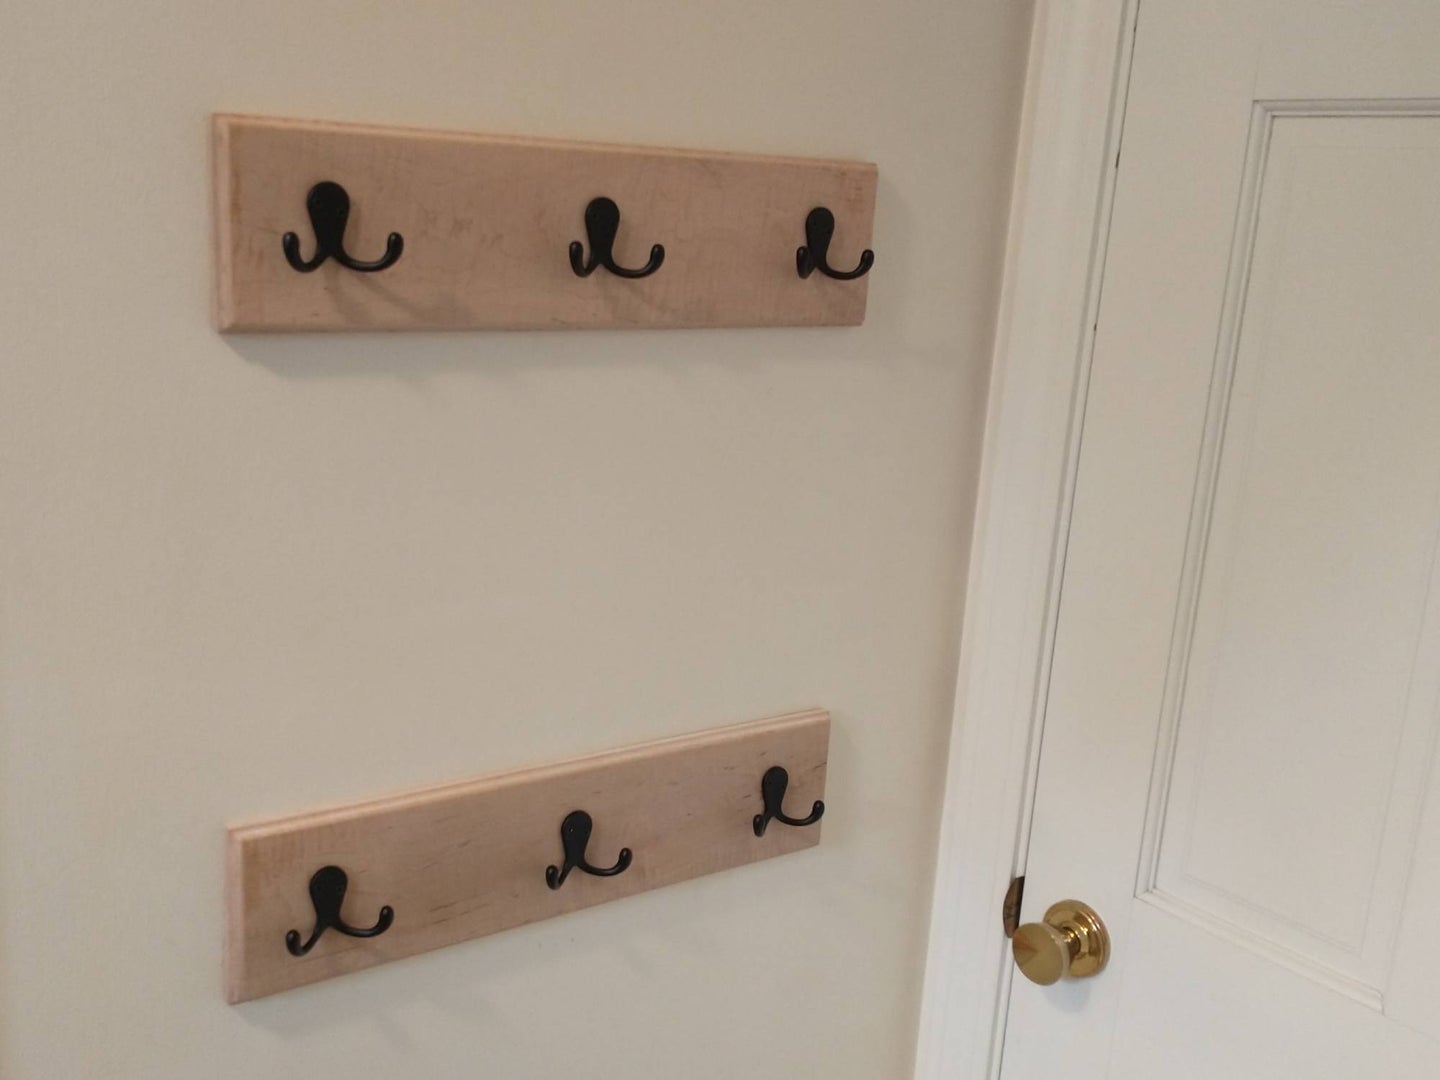 DIY wooden coat hooks by the door